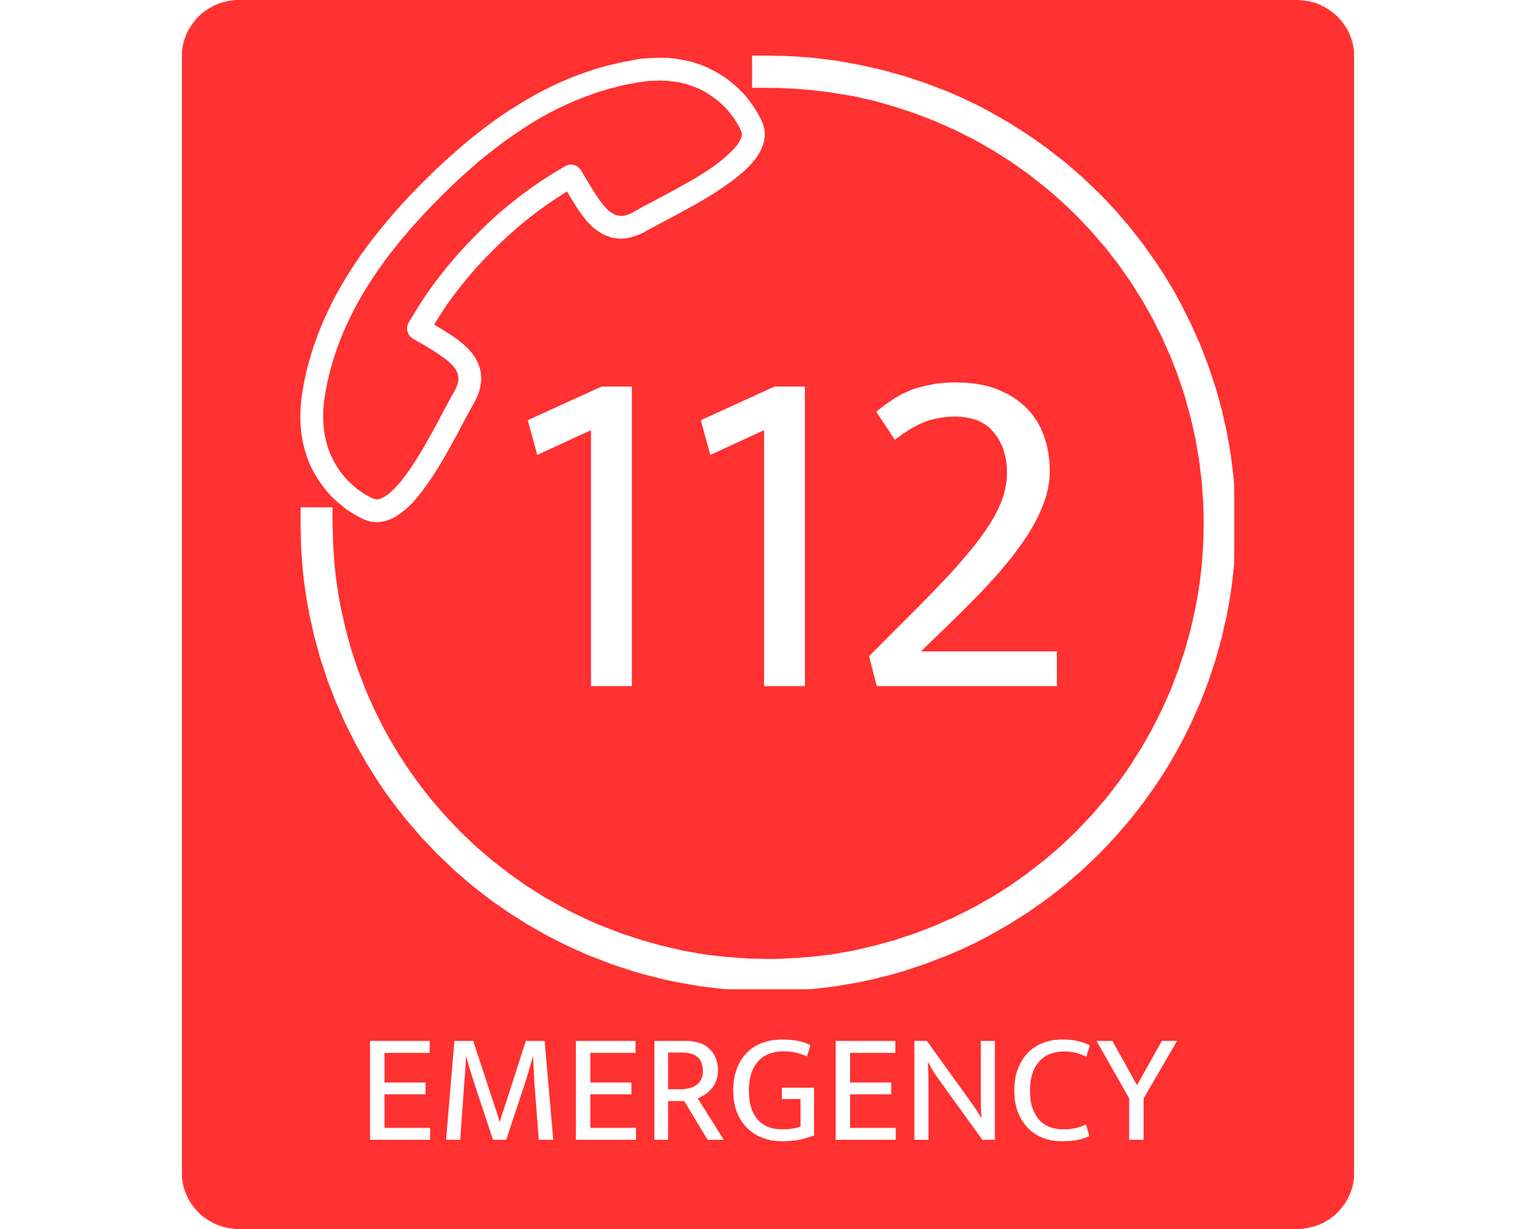 Llamada de urgencia en euros 112